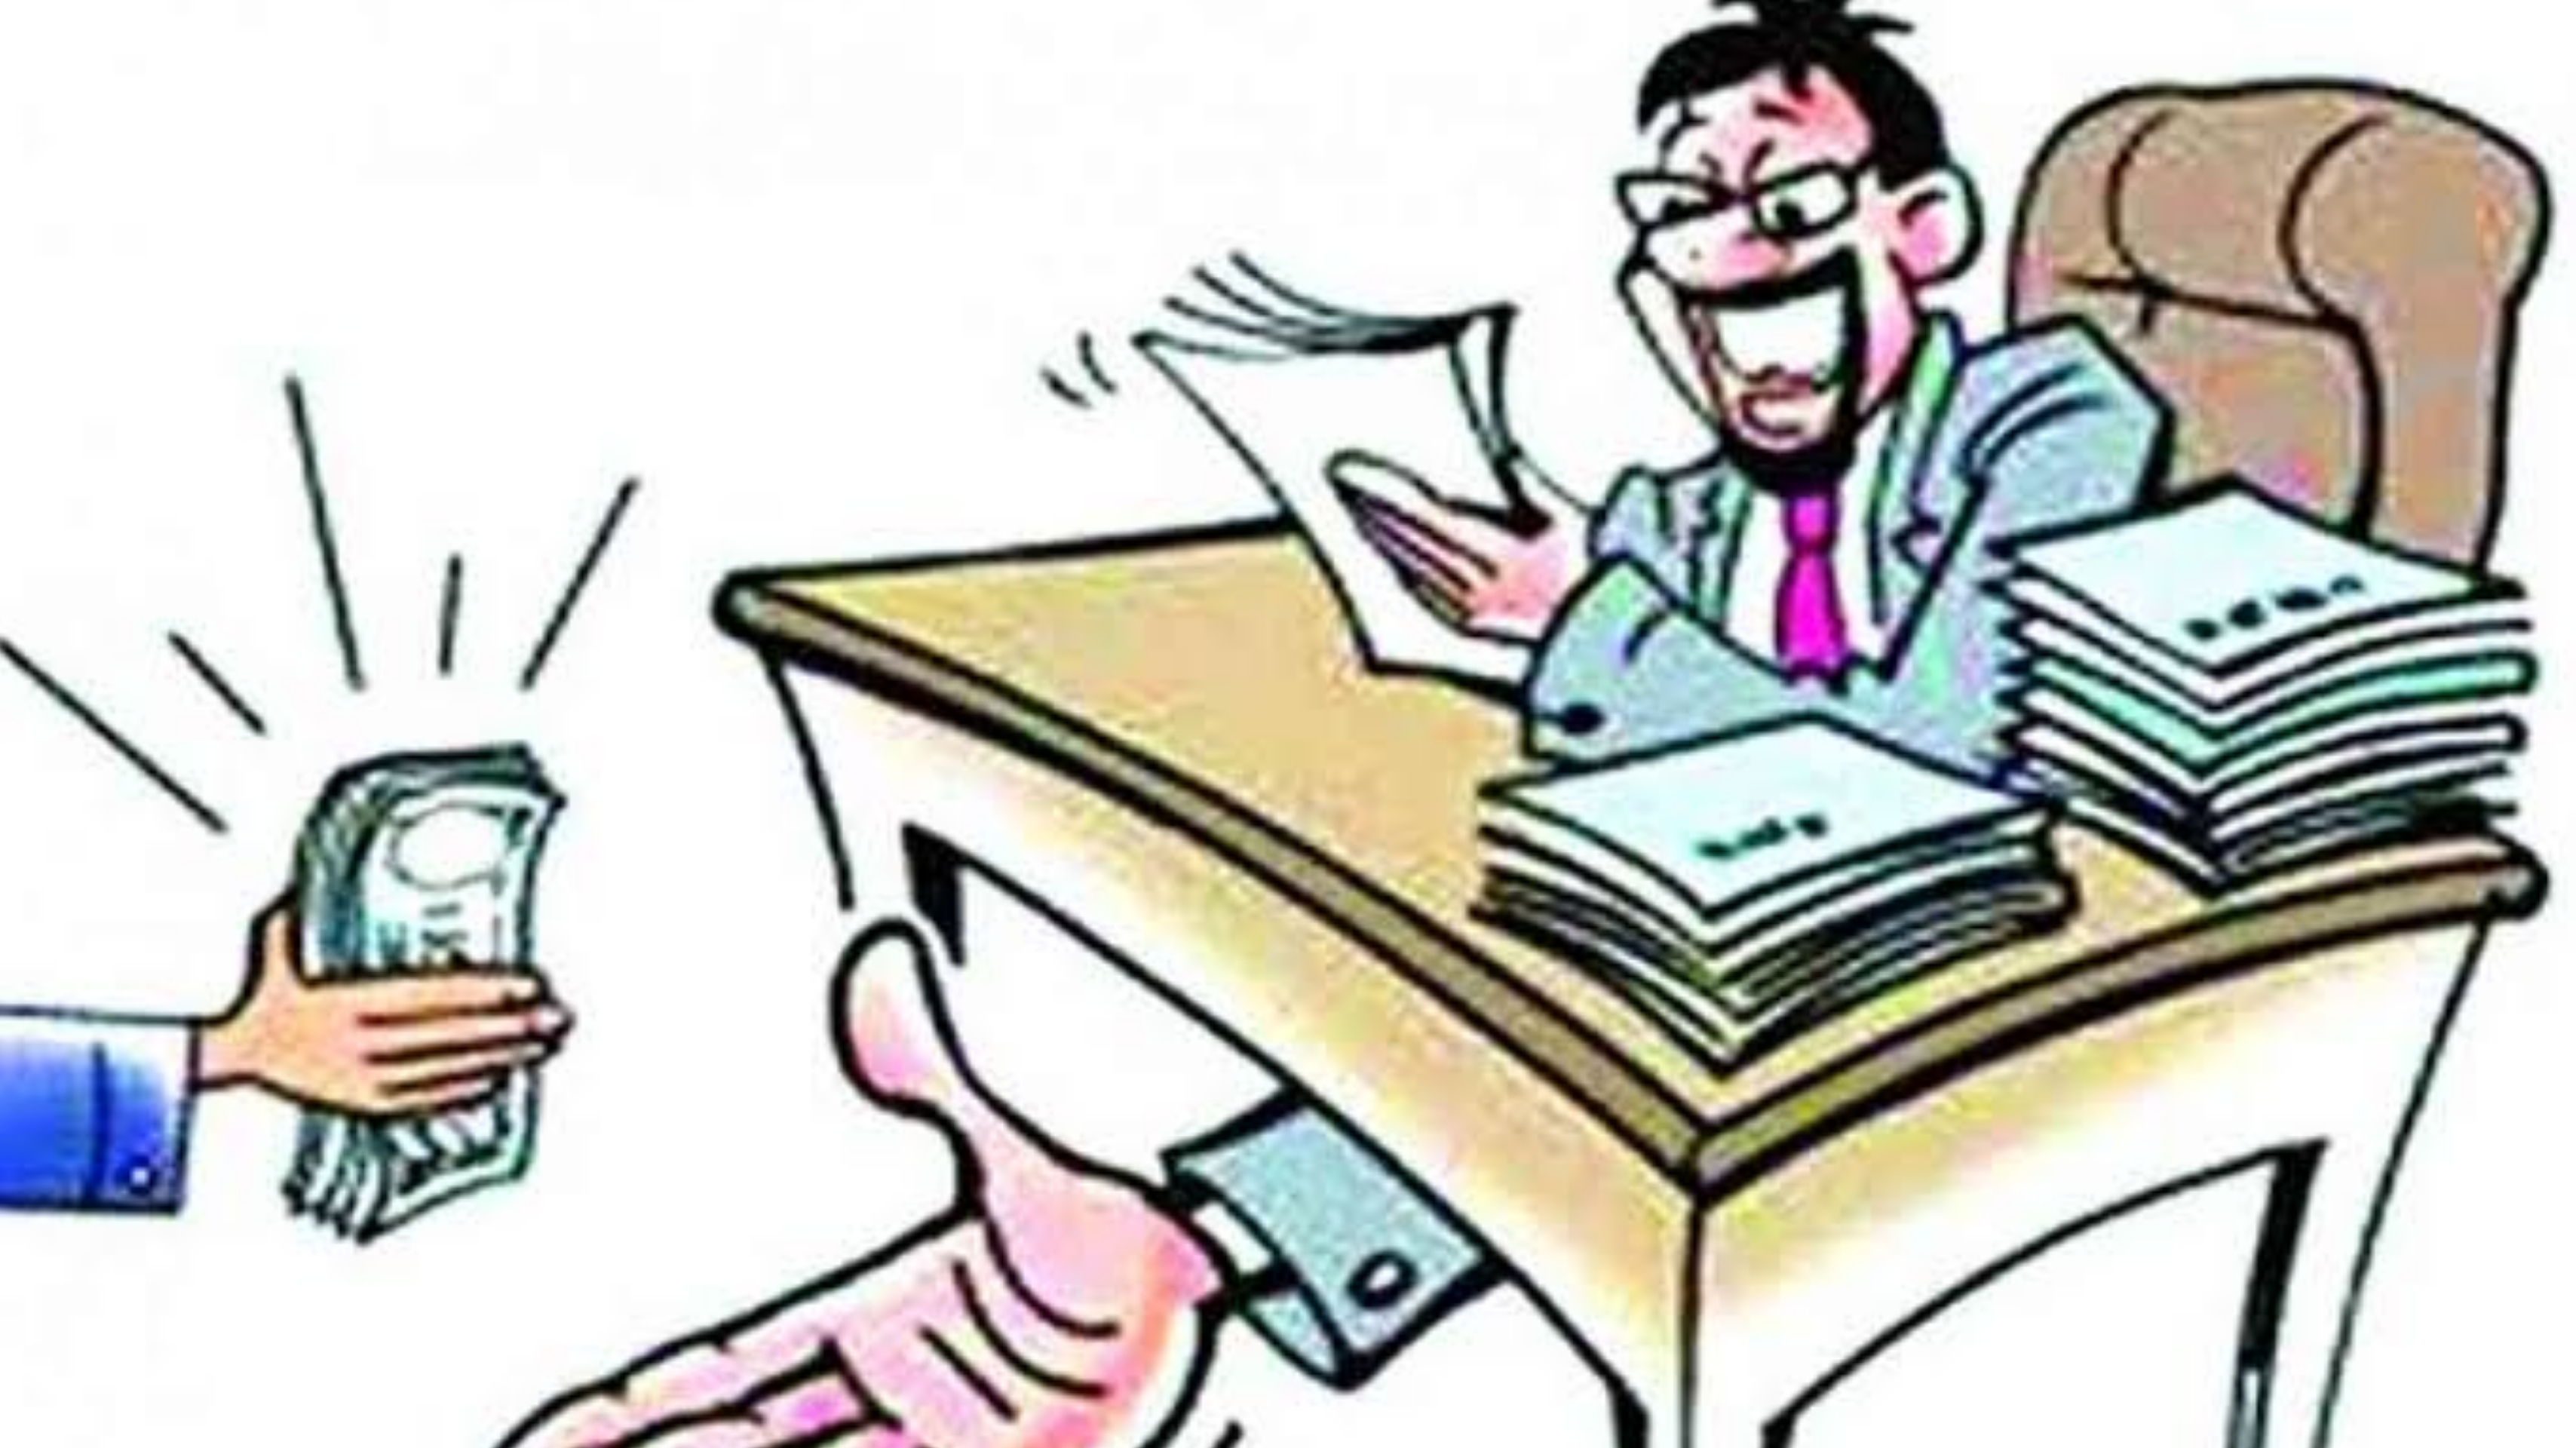 कंपोजिट ग्रांट में भ्रष्टाचार - बेसिक शिक्षा अधिकारी व मां वैष्णवी एजेंसी के खिलाफ मुकदमा पंजीकृत